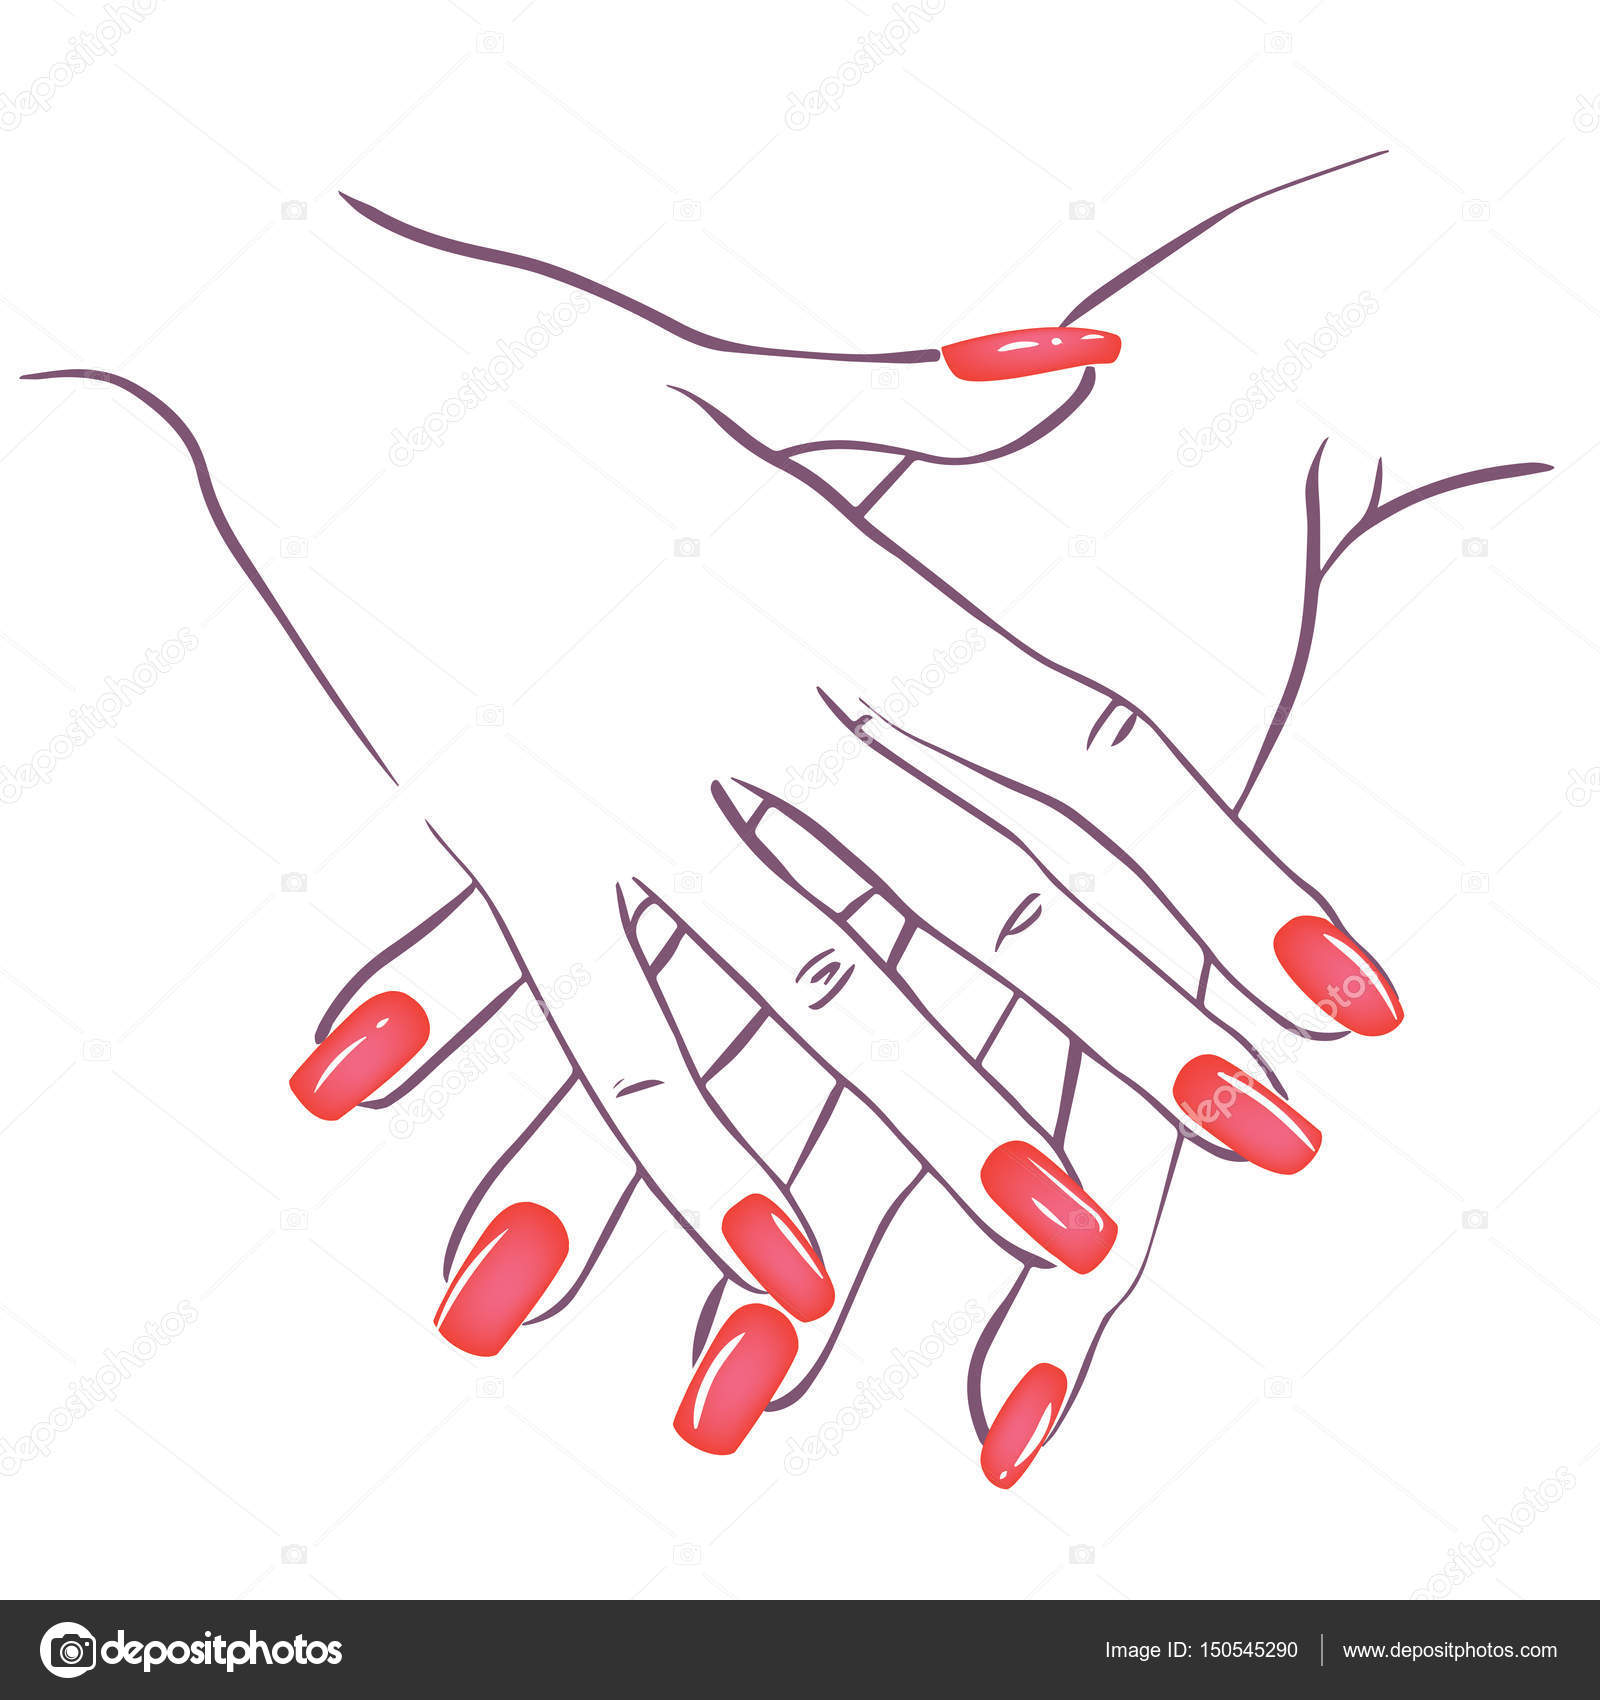 Premium Vector | Drawing of a hand holding nail polish nail drawing nail art